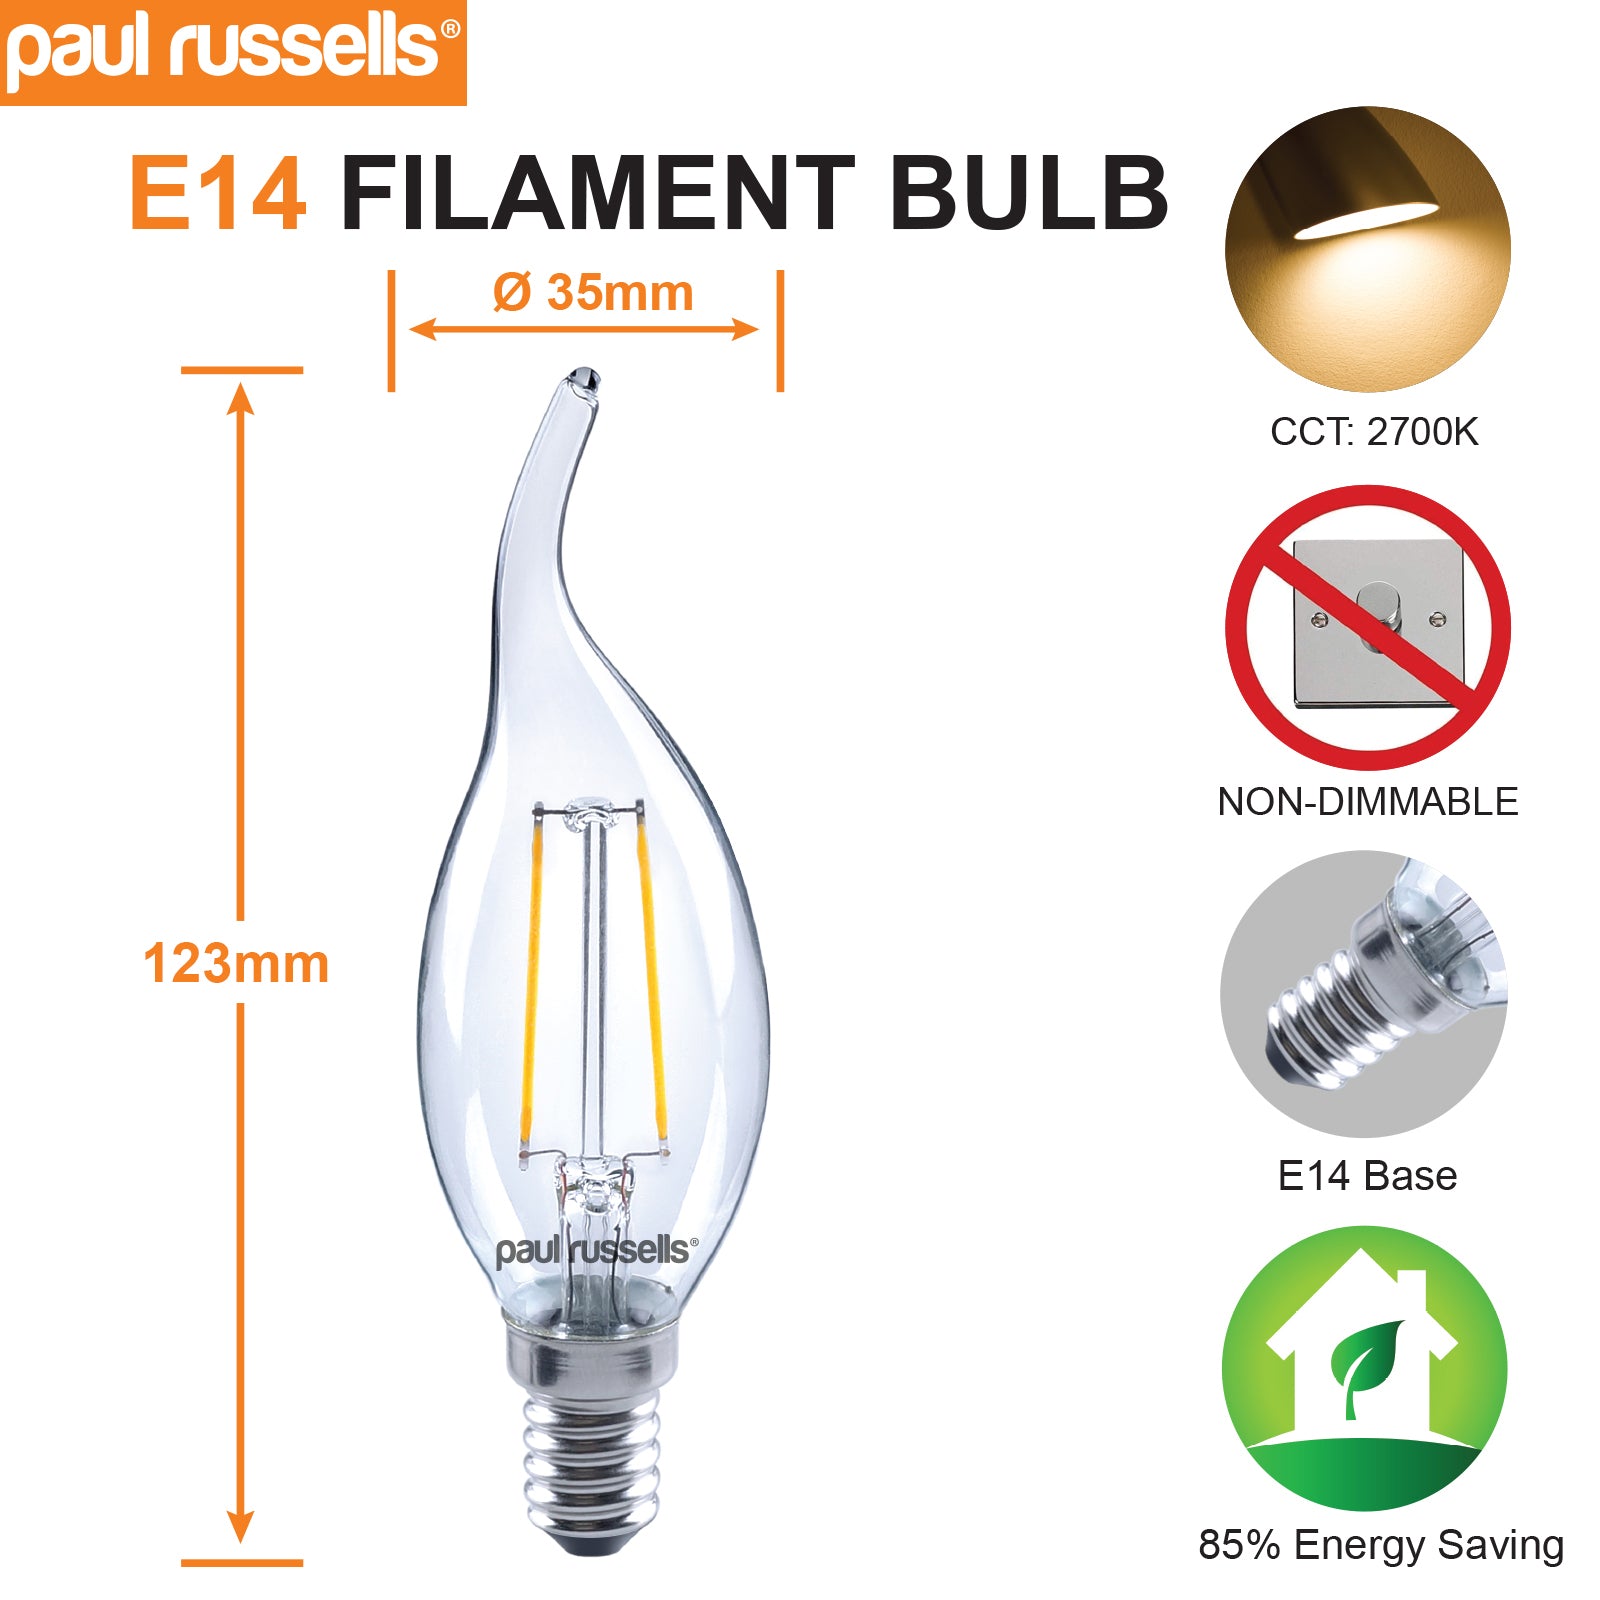 LED Filament Flame 2.5W (25w), SES/E14, 250 Lumens, Warm White(2700K), 240V